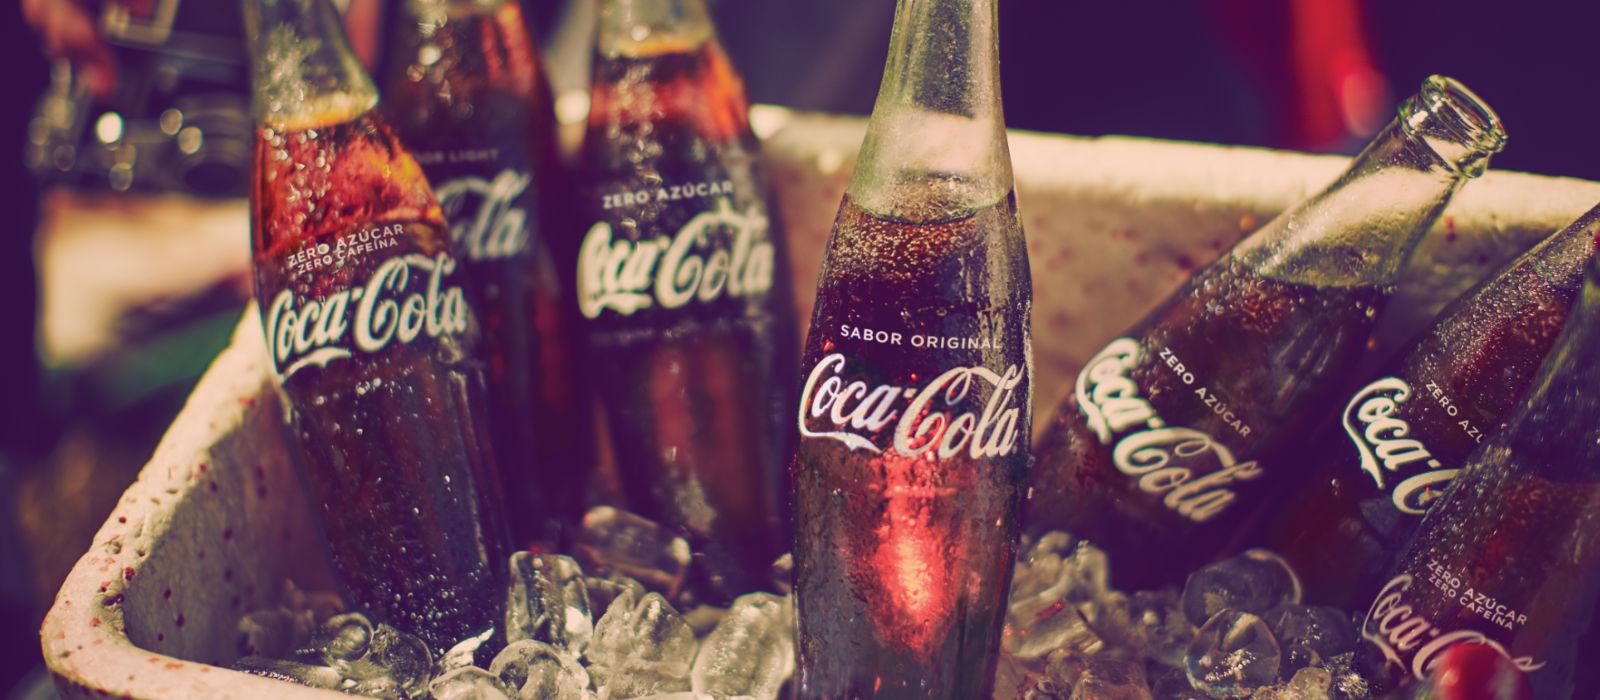 Cubo de hielos con Coca-Cola fria